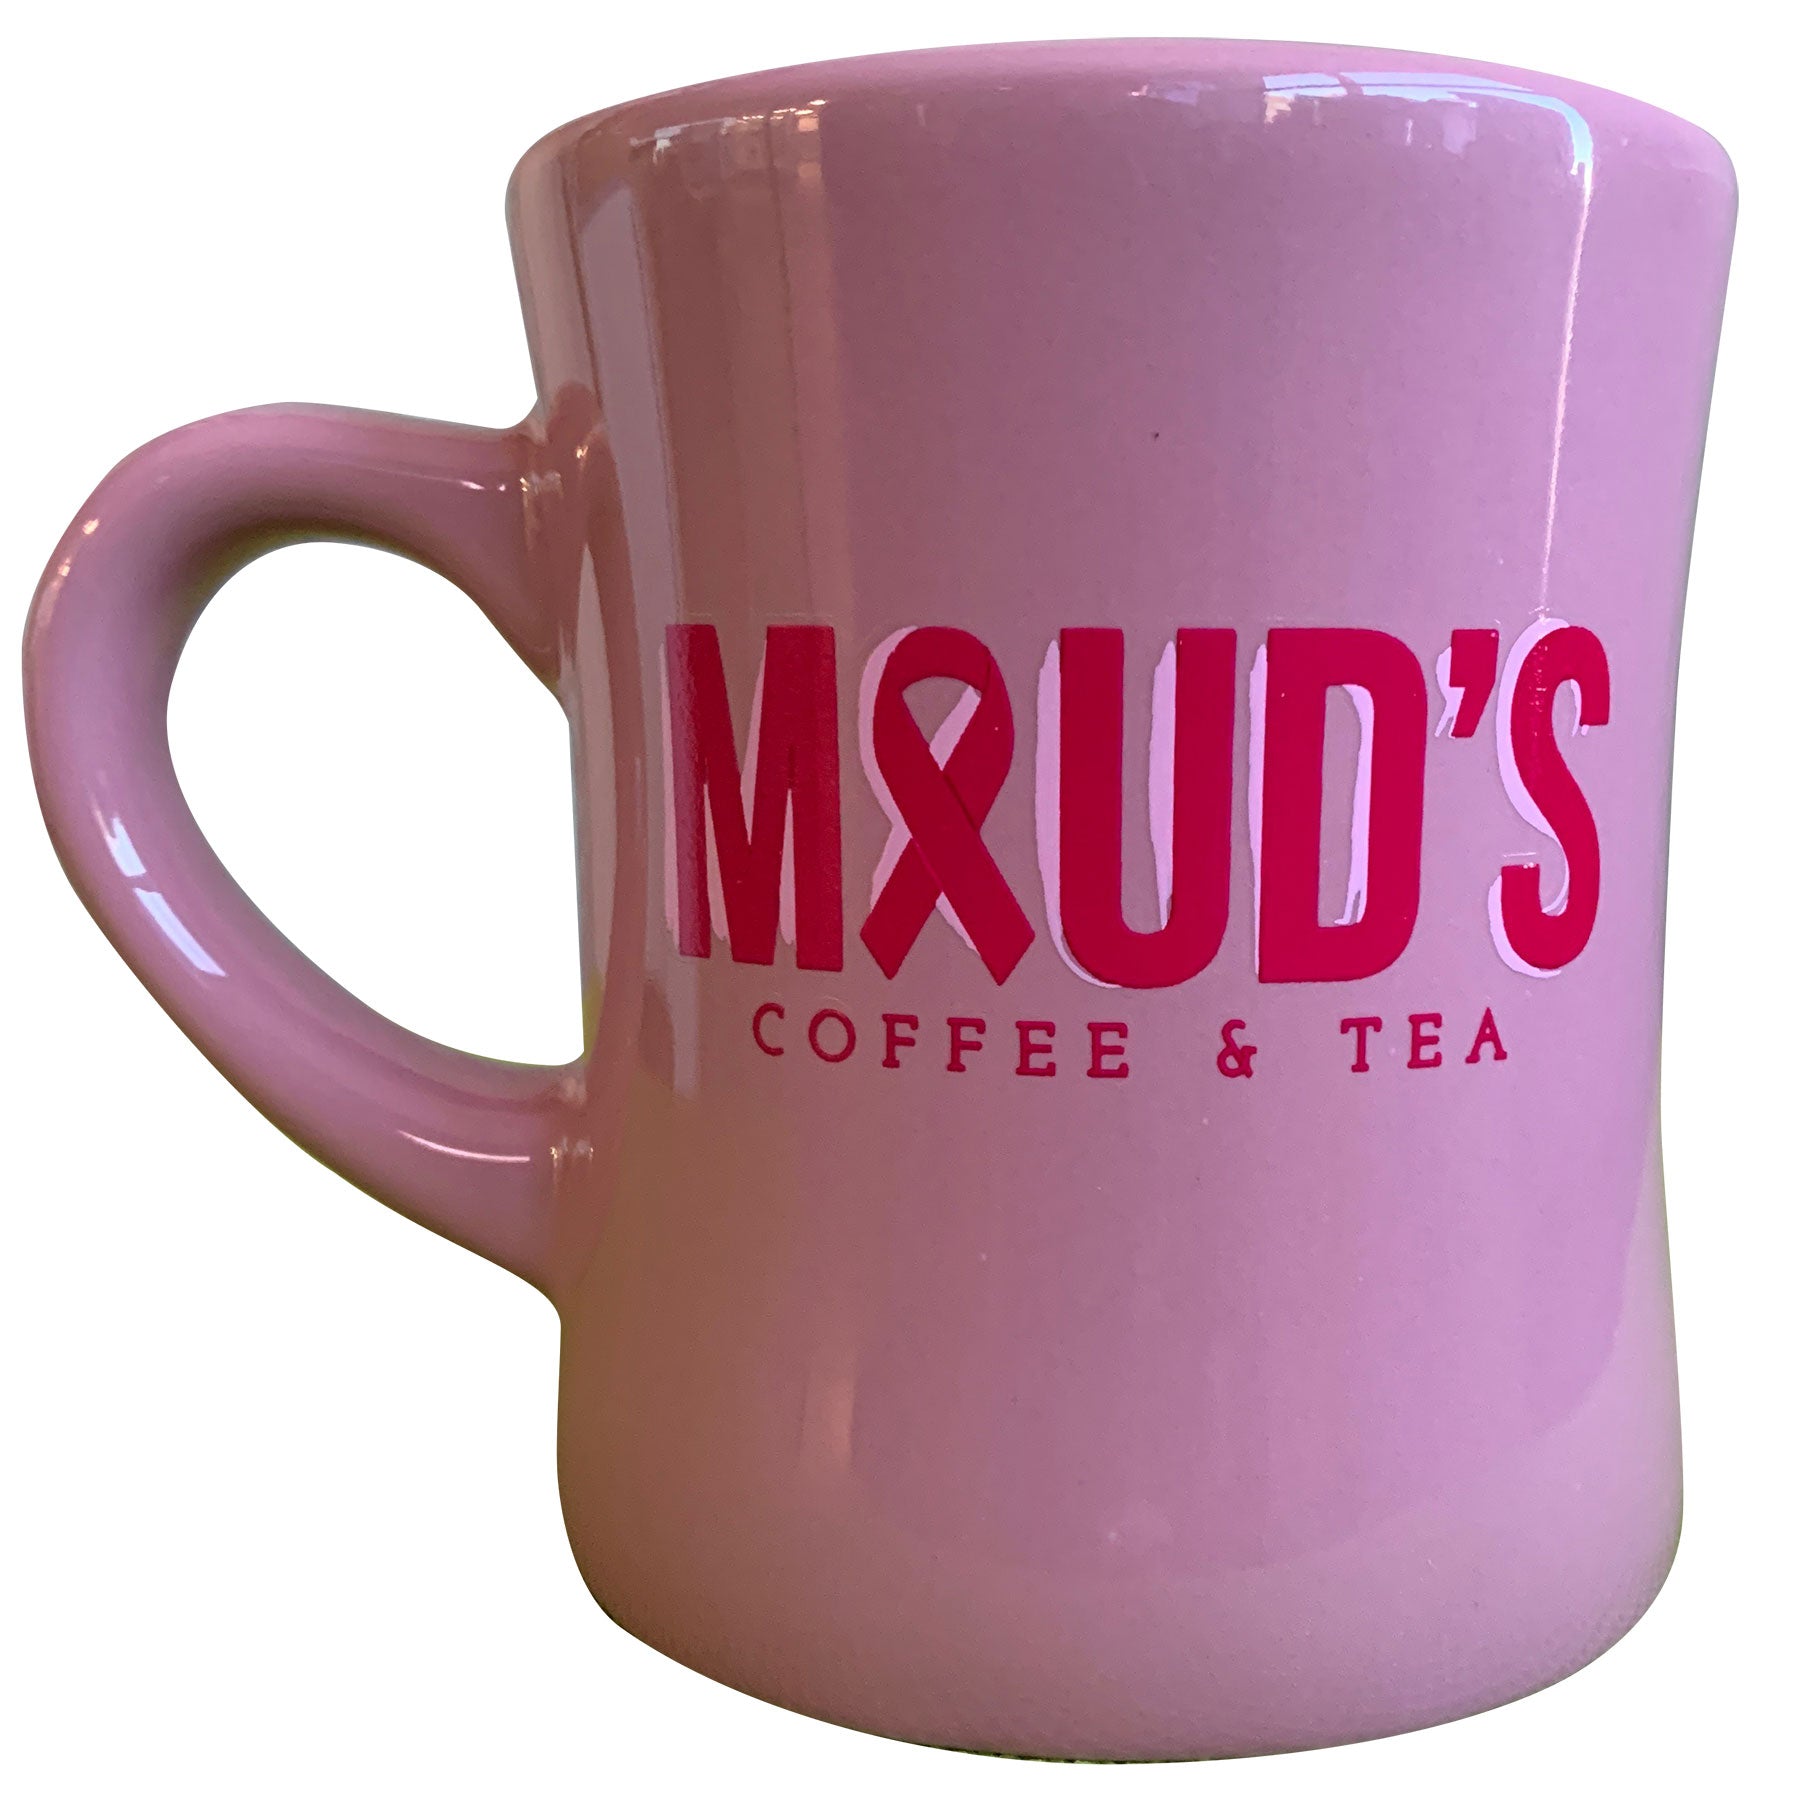 https://shopblends.com/cdn/shop/products/Pink-Mug-1_1920x.jpg?v=1605546520